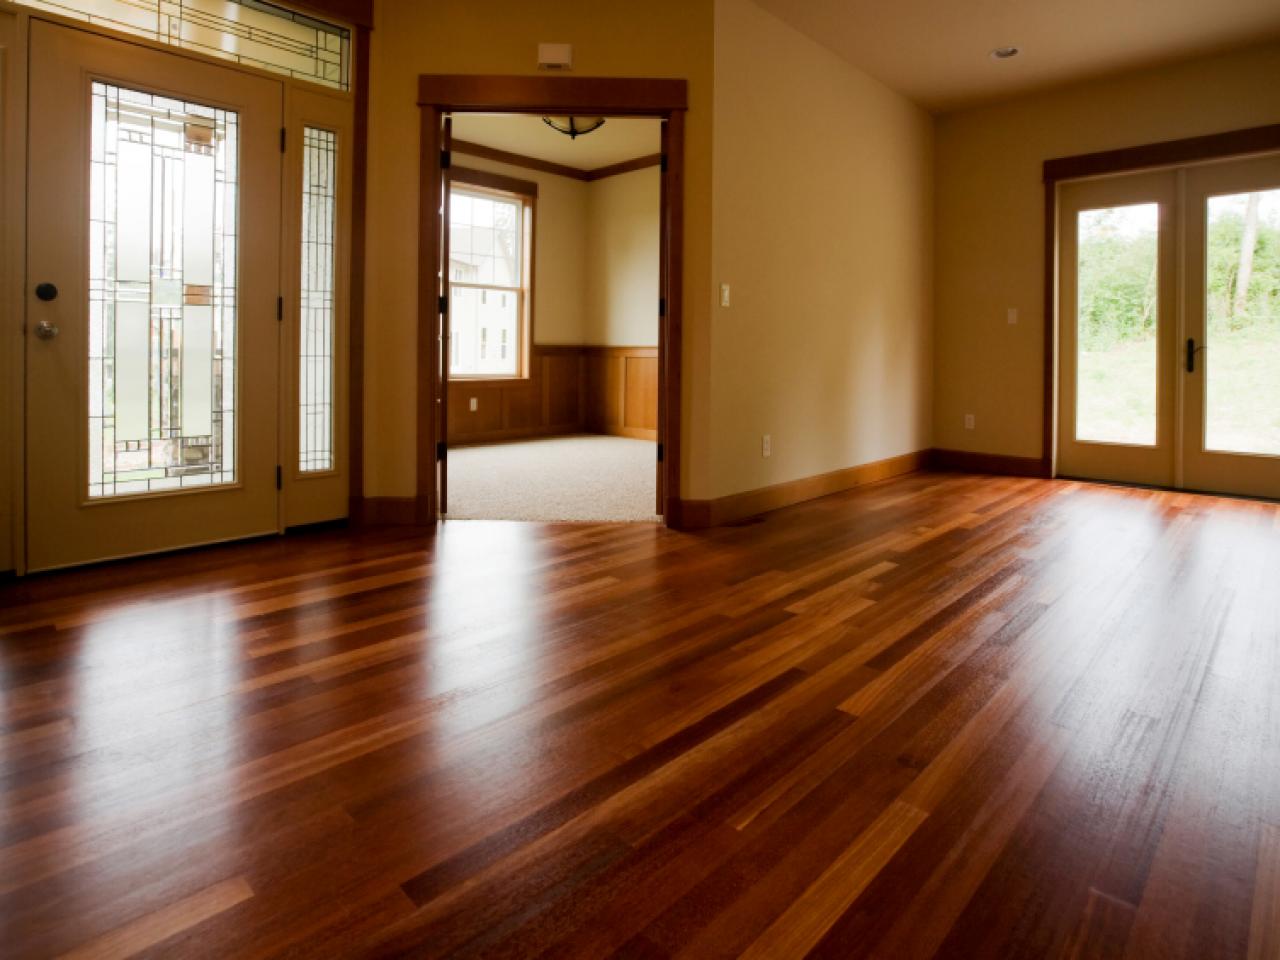 Cleaning Tile Wood And Vinyl Floors, Wood Floor Vs Tile